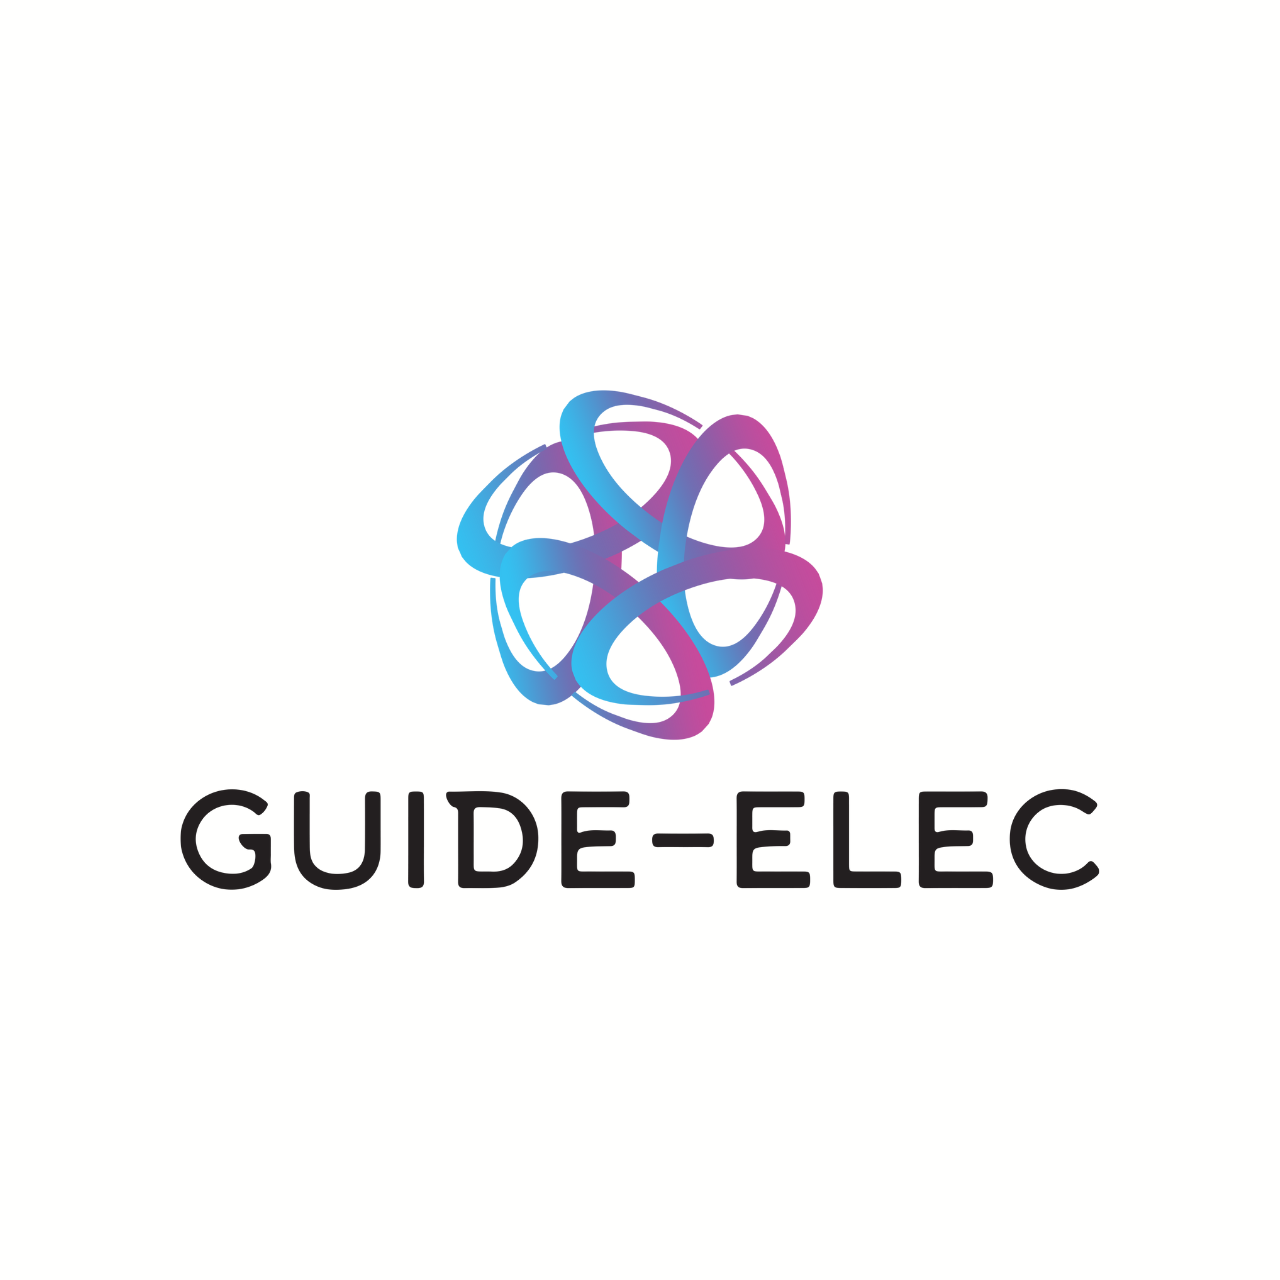 Guide Elec